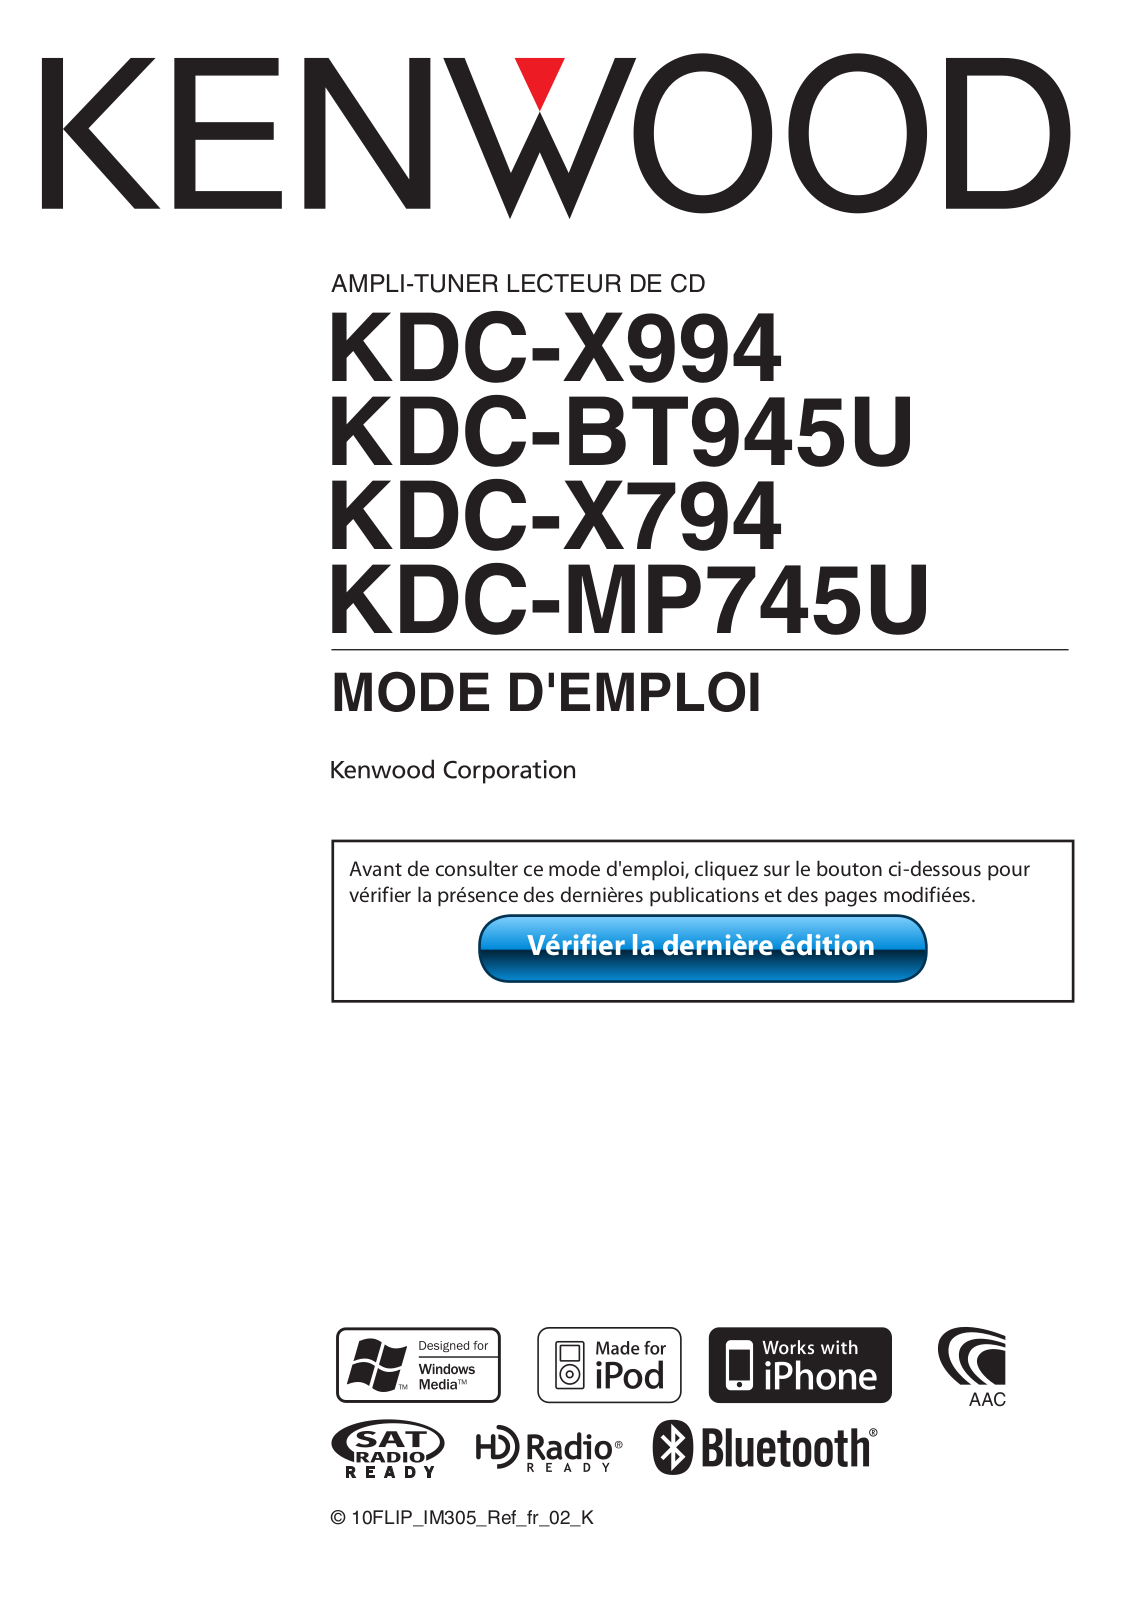 Kenwood kdc-x994 User Manual